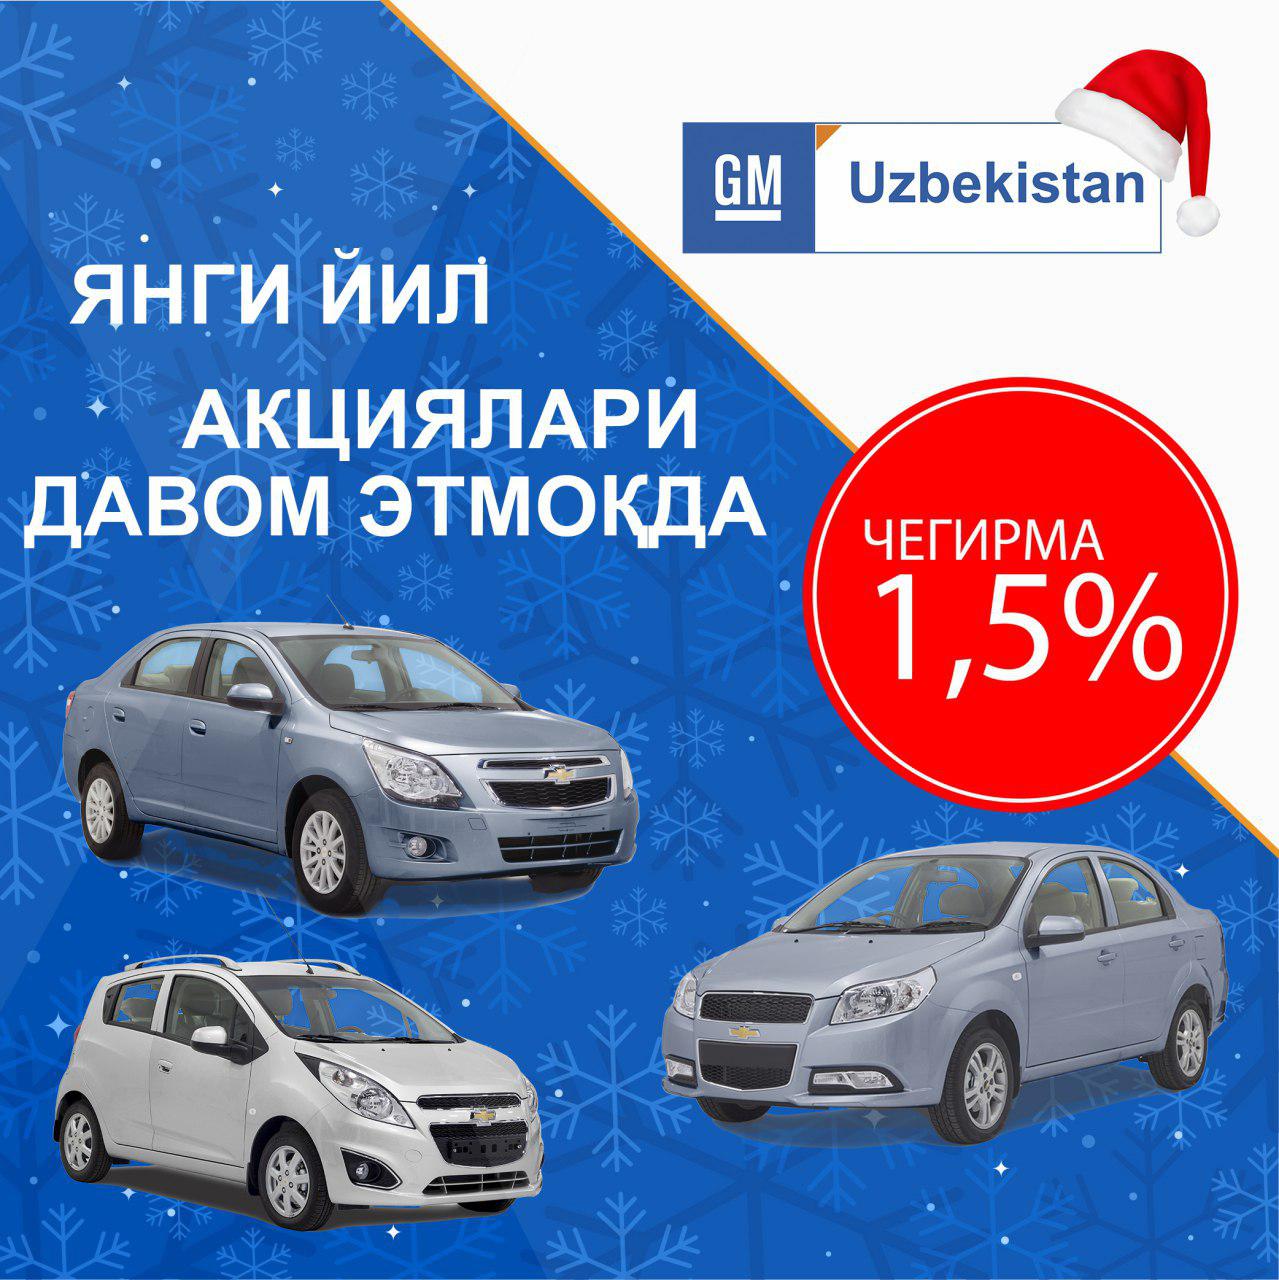 НОВОГОДНИЕ АКЦИИ на автомобили GM Uzbekistan ПРОДОЛЖАЮТСЯ